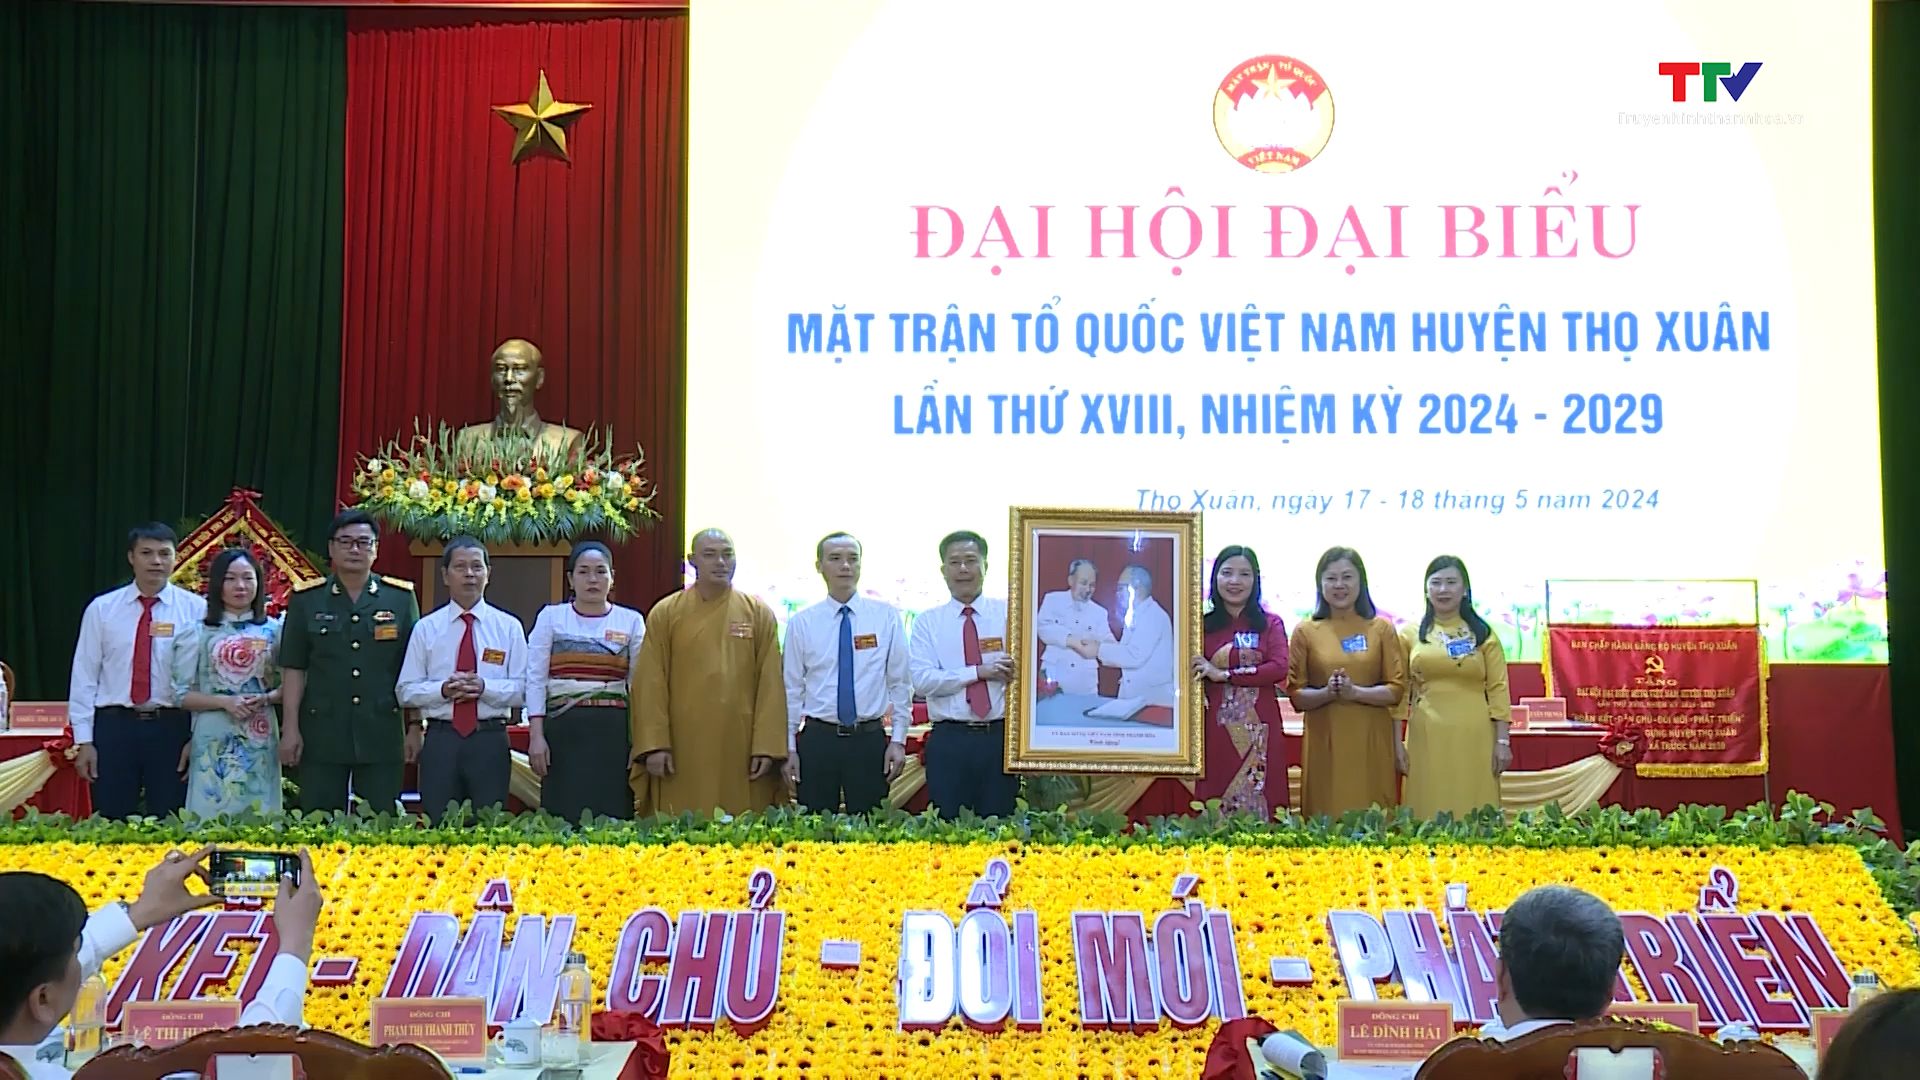 Đại hội đại biểu Mặt trận Tổ quốc huyện Thọ Xuân lần thứ XVIII, nhiệm kỳ 2024-2029- Ảnh 2.